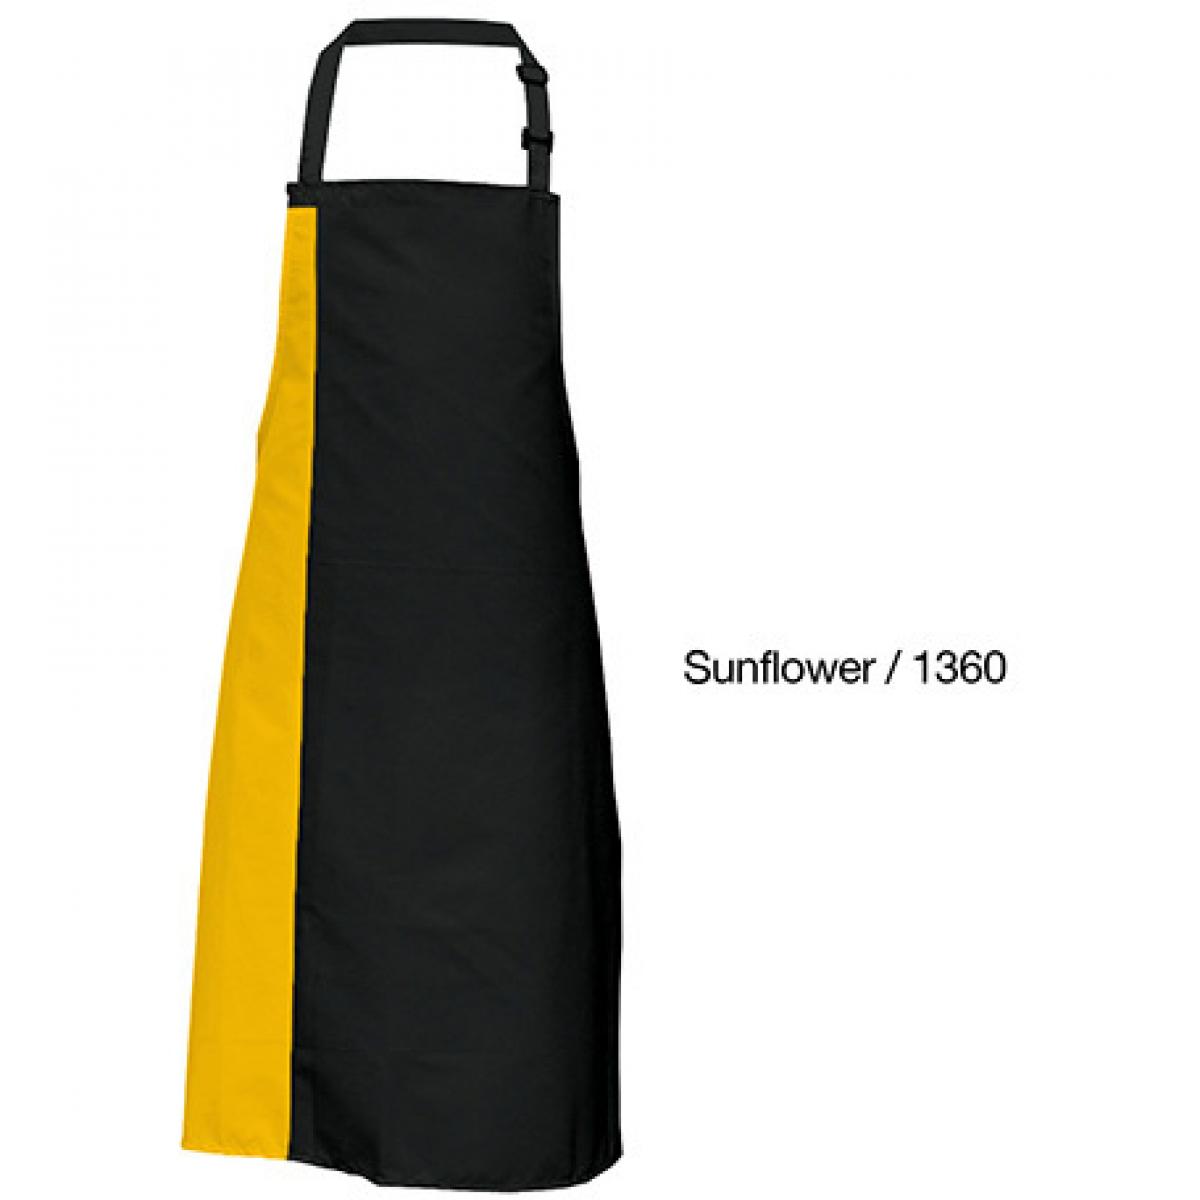 Hersteller: Link Kitchen Wear Herstellernummer: DS8572 Artikelbezeichnung: Duo Apron - 72 x 85 cm - Waschbar bis 60 °C Farbe: Black/Sunflower (ca. Pantone 136c)